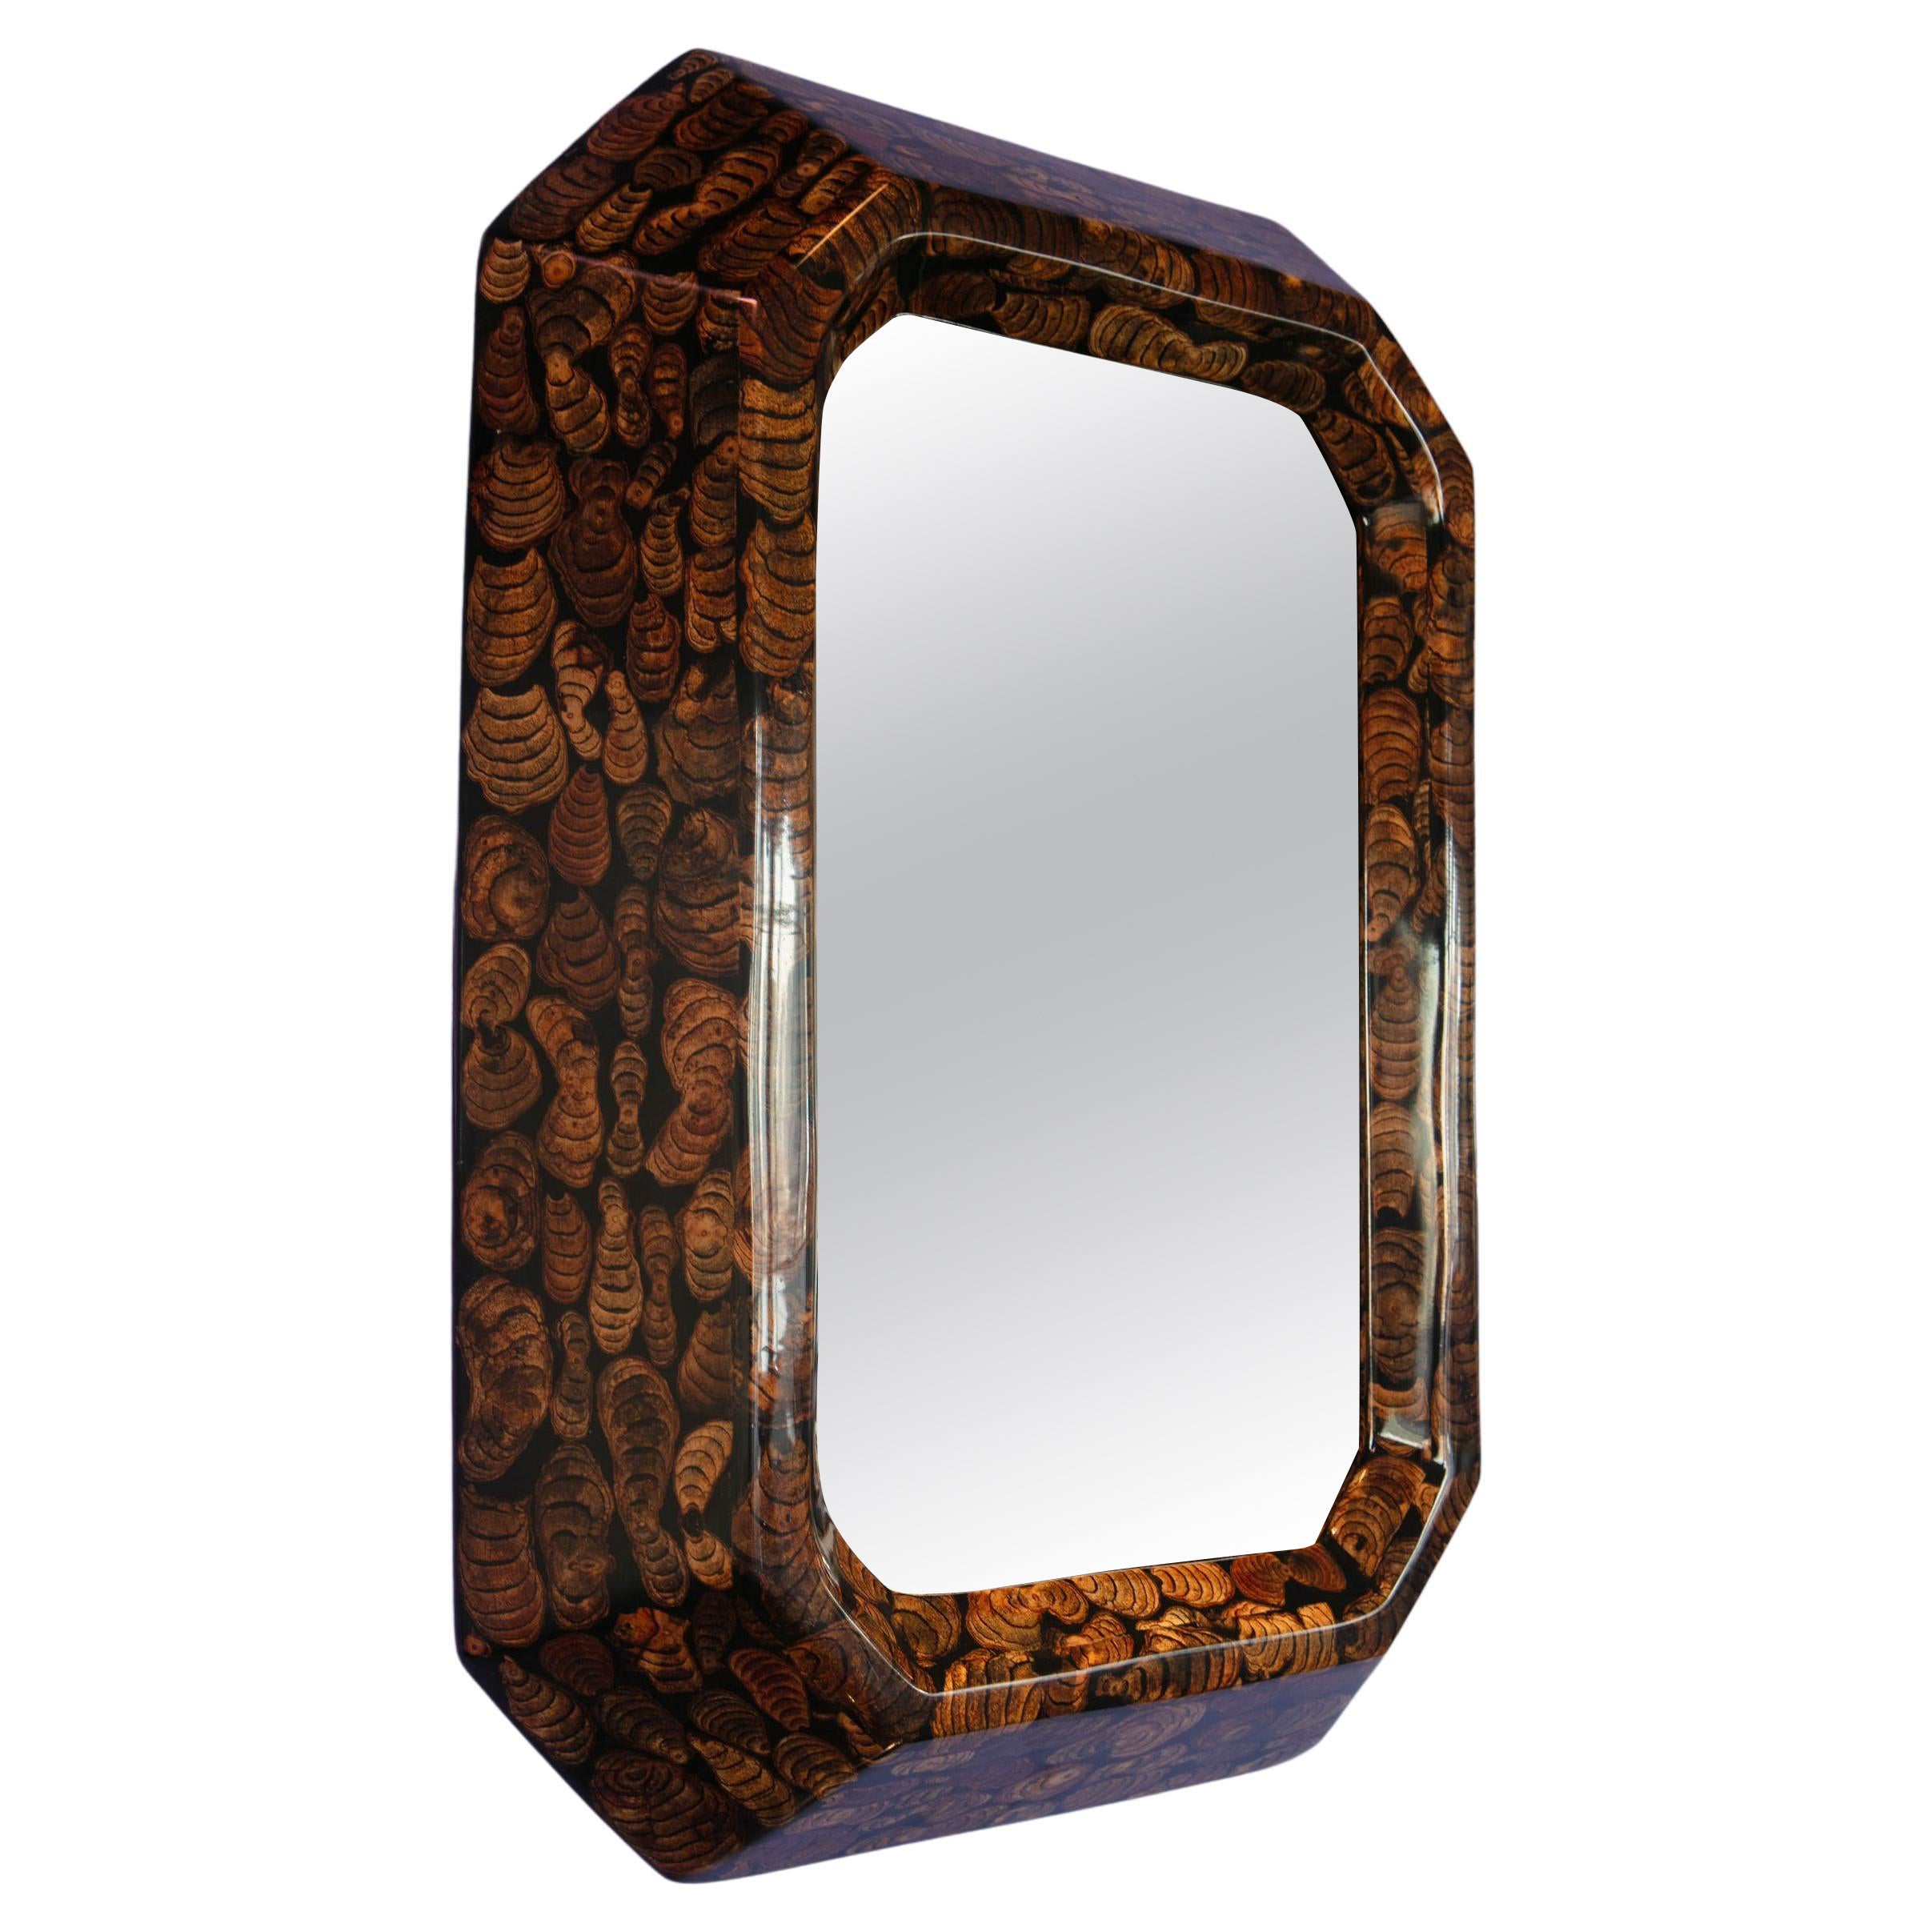 Time Further Mirror in Wood Branch Veneer by Andrea Vargas Dieppa